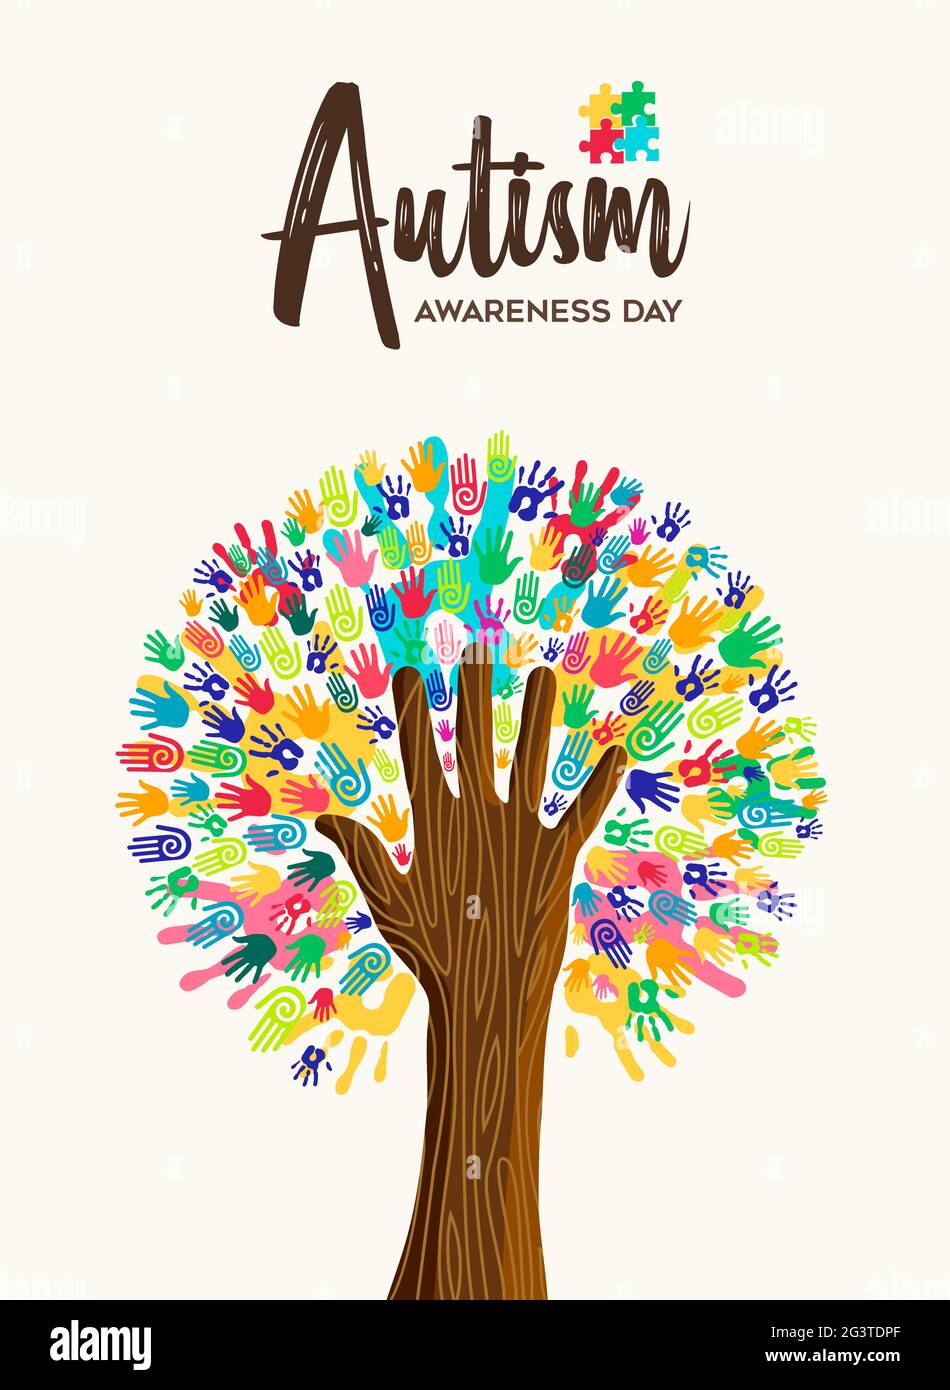 Autismus Awareness Day Grußkarte Illustration von bunten verschiedenen Kind Hand drucken zusammen machen Baumform. Autistische Kinder lernen Fähigkeit su Stock Vektor